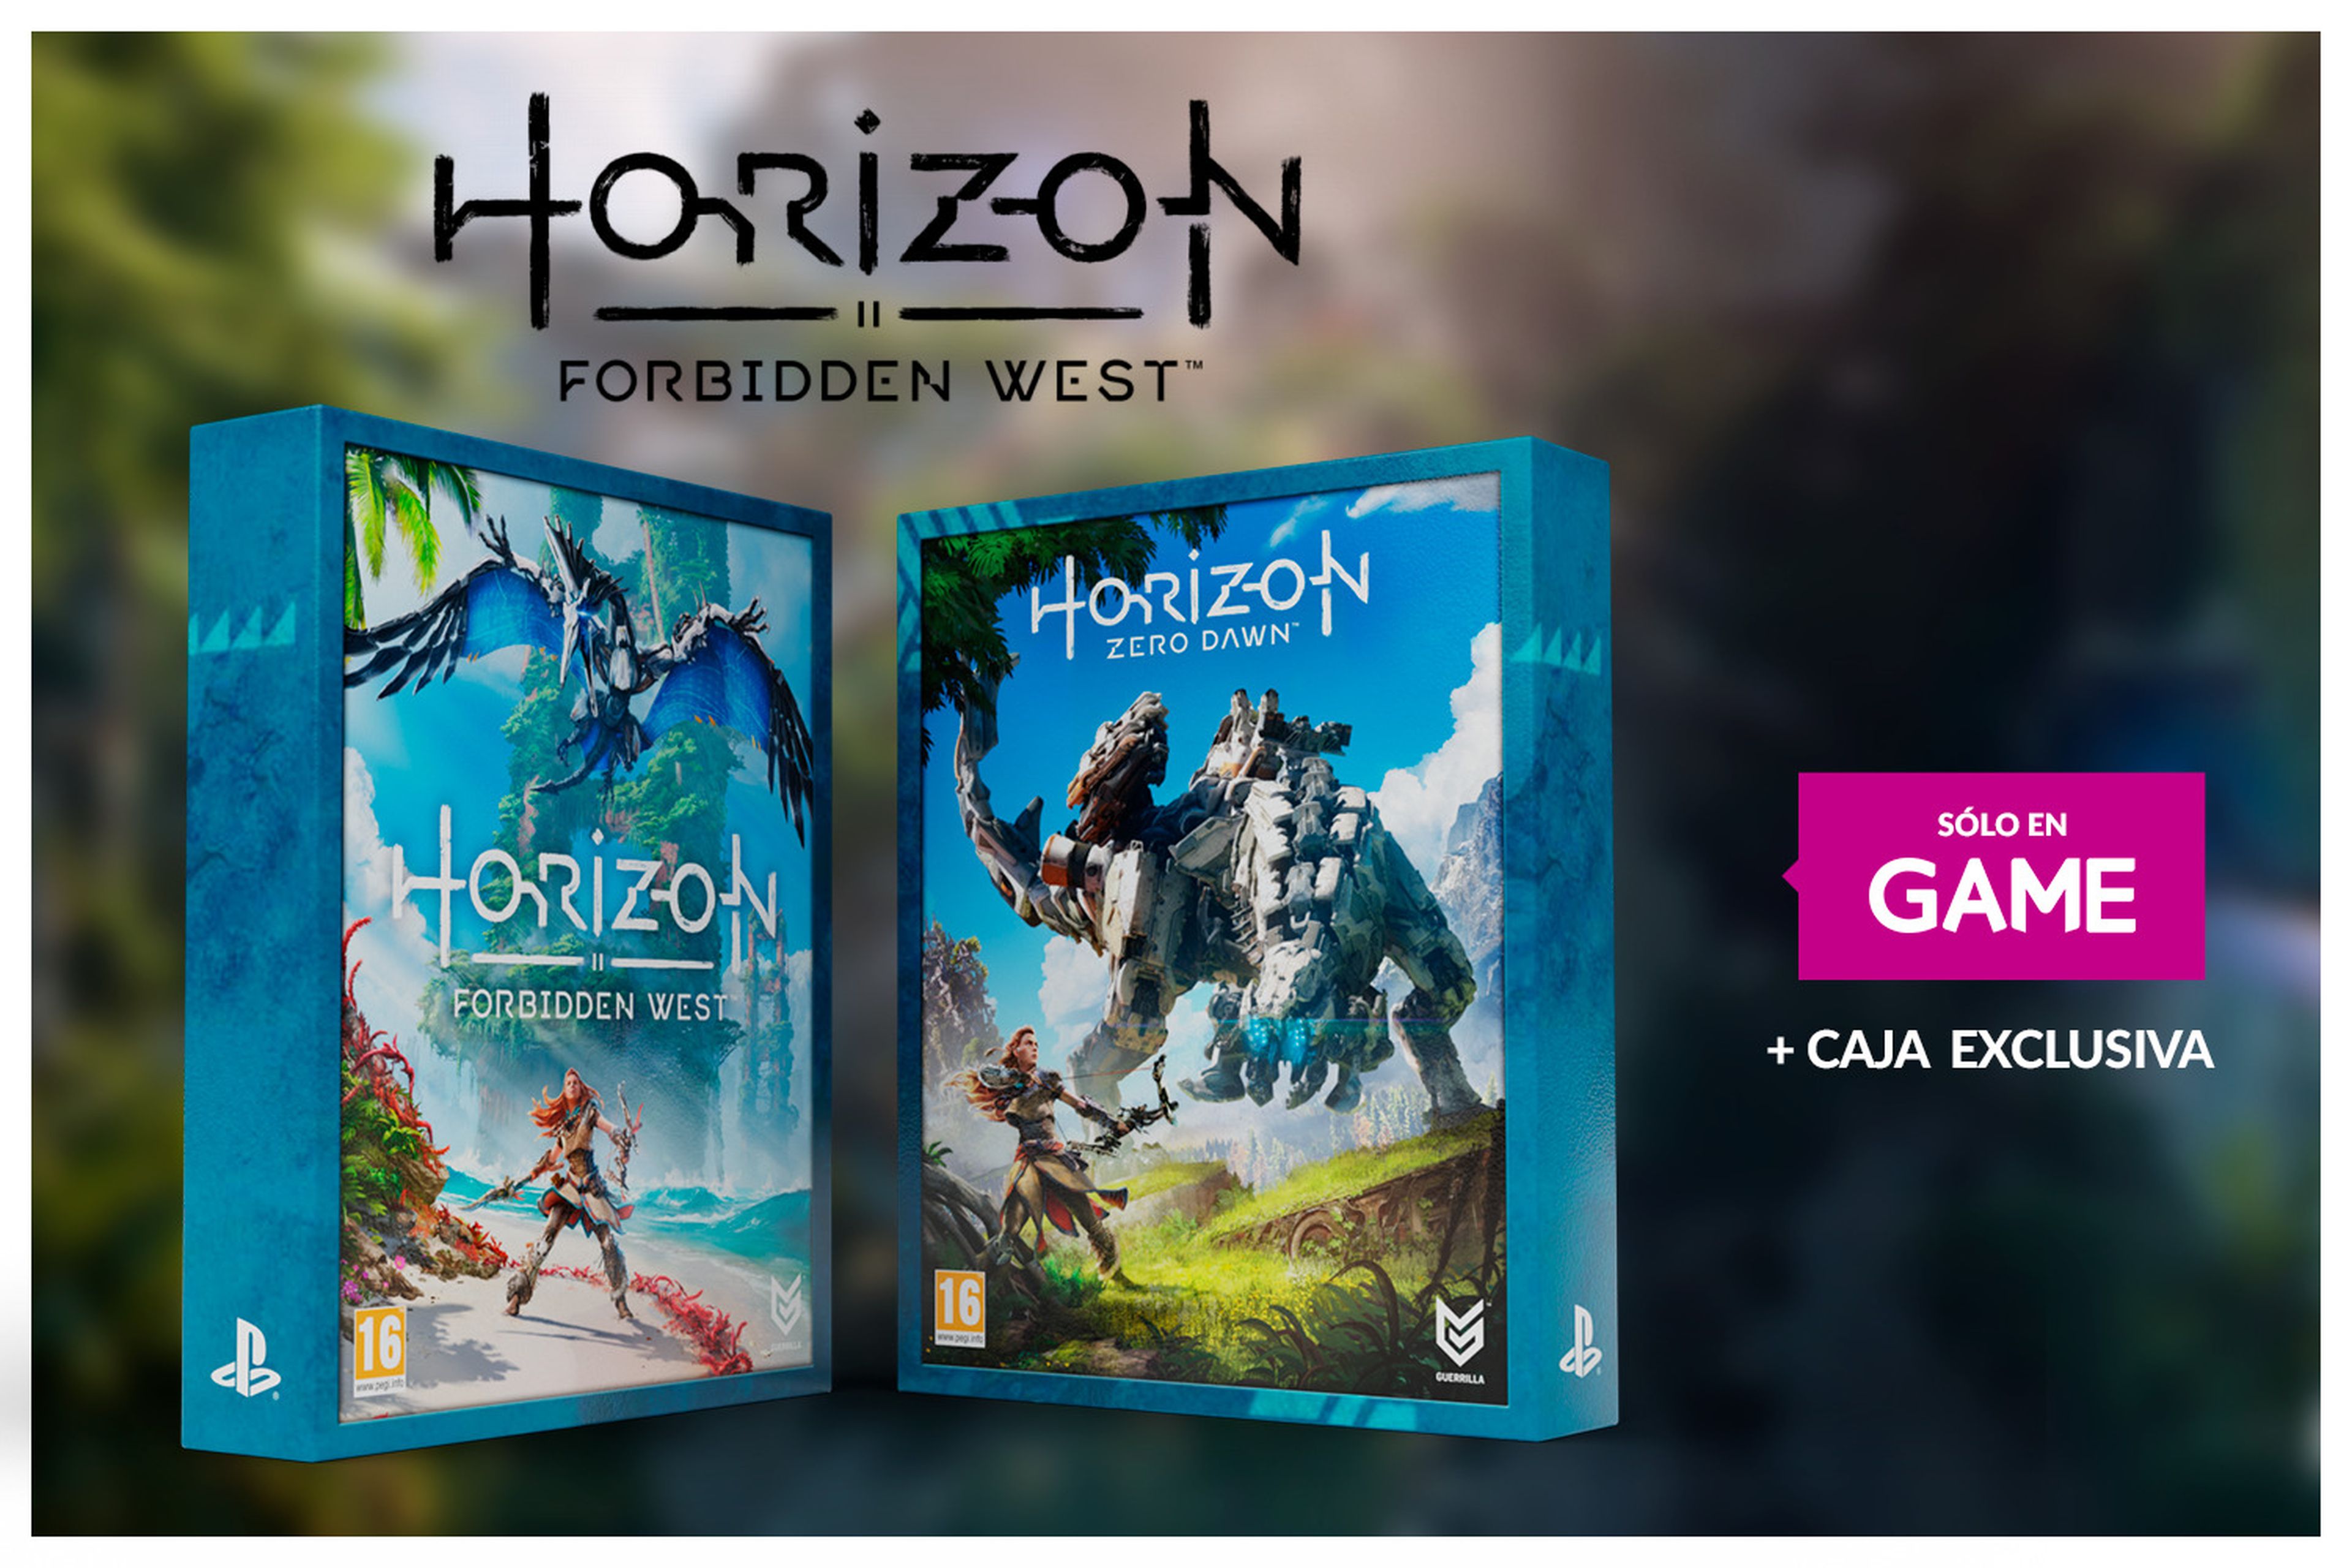 Horizon II Forbidden West